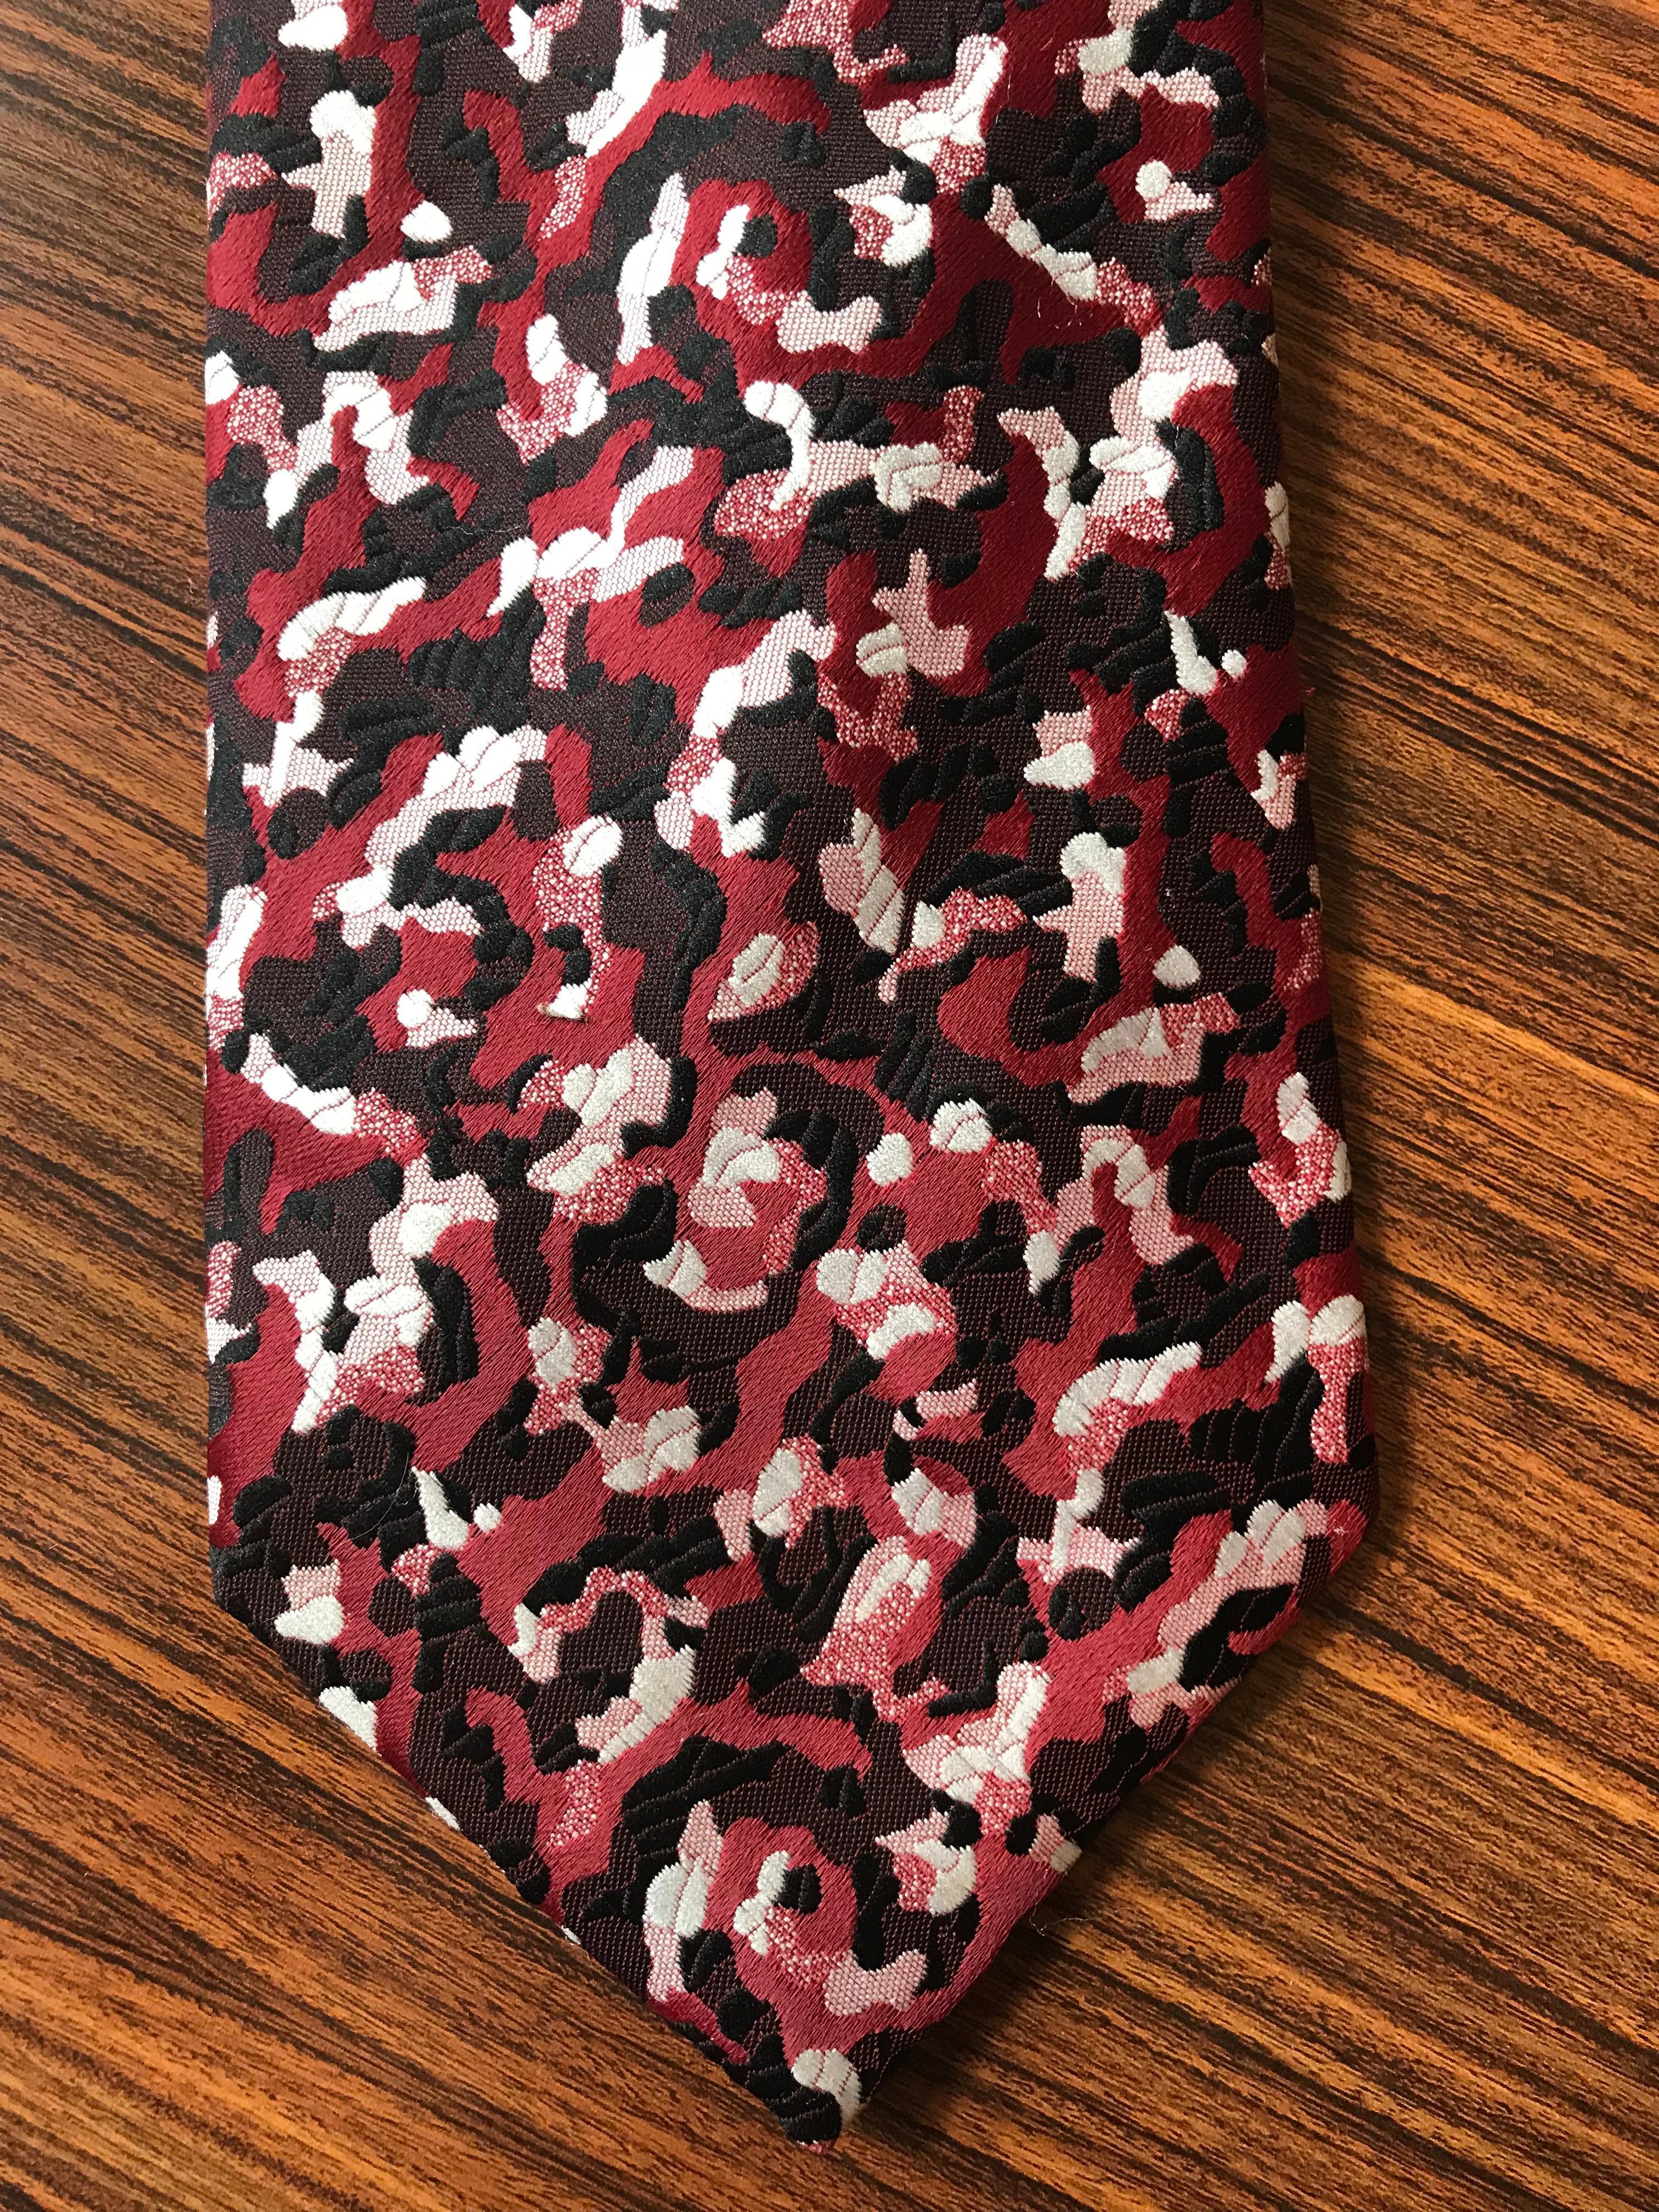 Schiaparelli-Krawatte aus den 1970er Jahren in einem schönen roten (die Farbe einer frischen, reifen Kirsche) und schwarz-weißen Muster, das für das inzwischen aufgelöste Kaufhaus Hughes & Hatcher in Michigan entworfen wurde. Signiert Schiaparelli